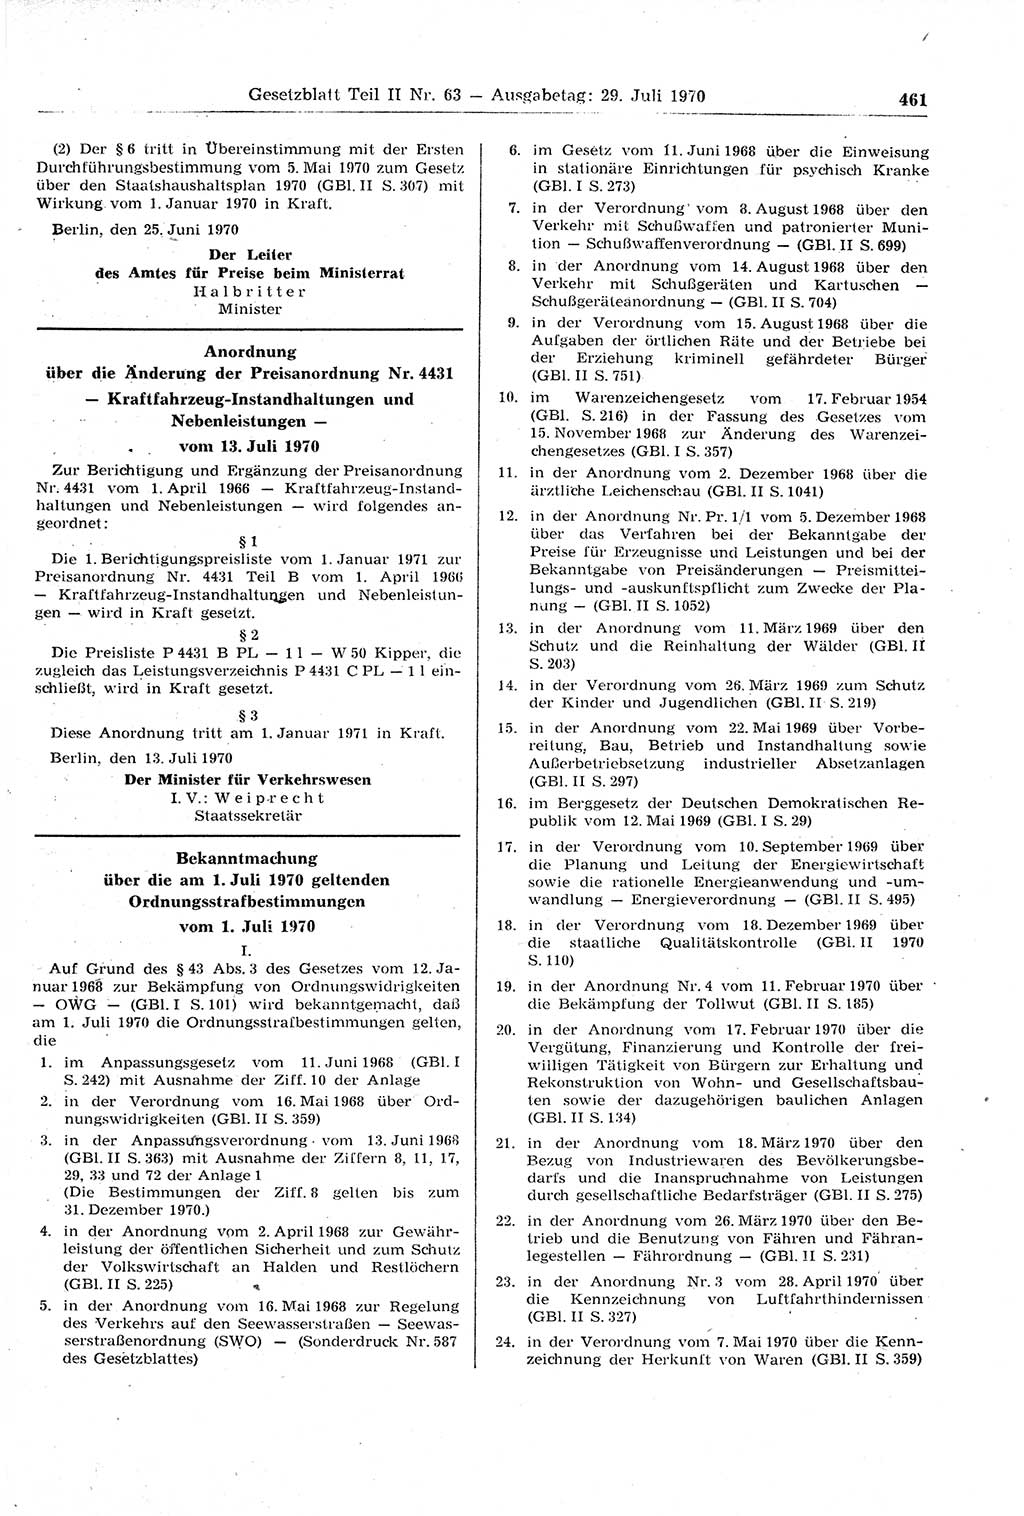 Gesetzblatt (GBl.) der Deutschen Demokratischen Republik (DDR) Teil ⅠⅠ 1970, Seite 461 (GBl. DDR ⅠⅠ 1970, S. 461)